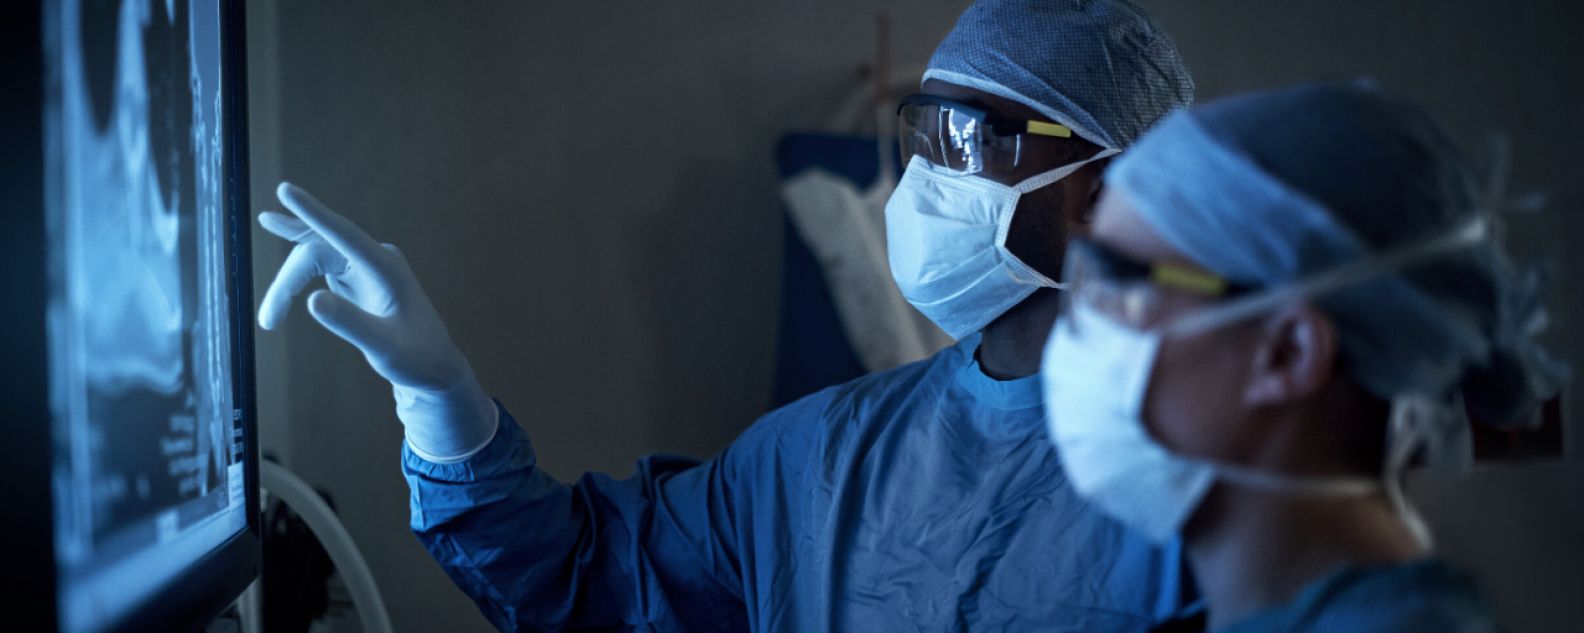 Photo de deux chirurgiens analysant les scanners médicaux d'un patient pendant une opération chirurgicale